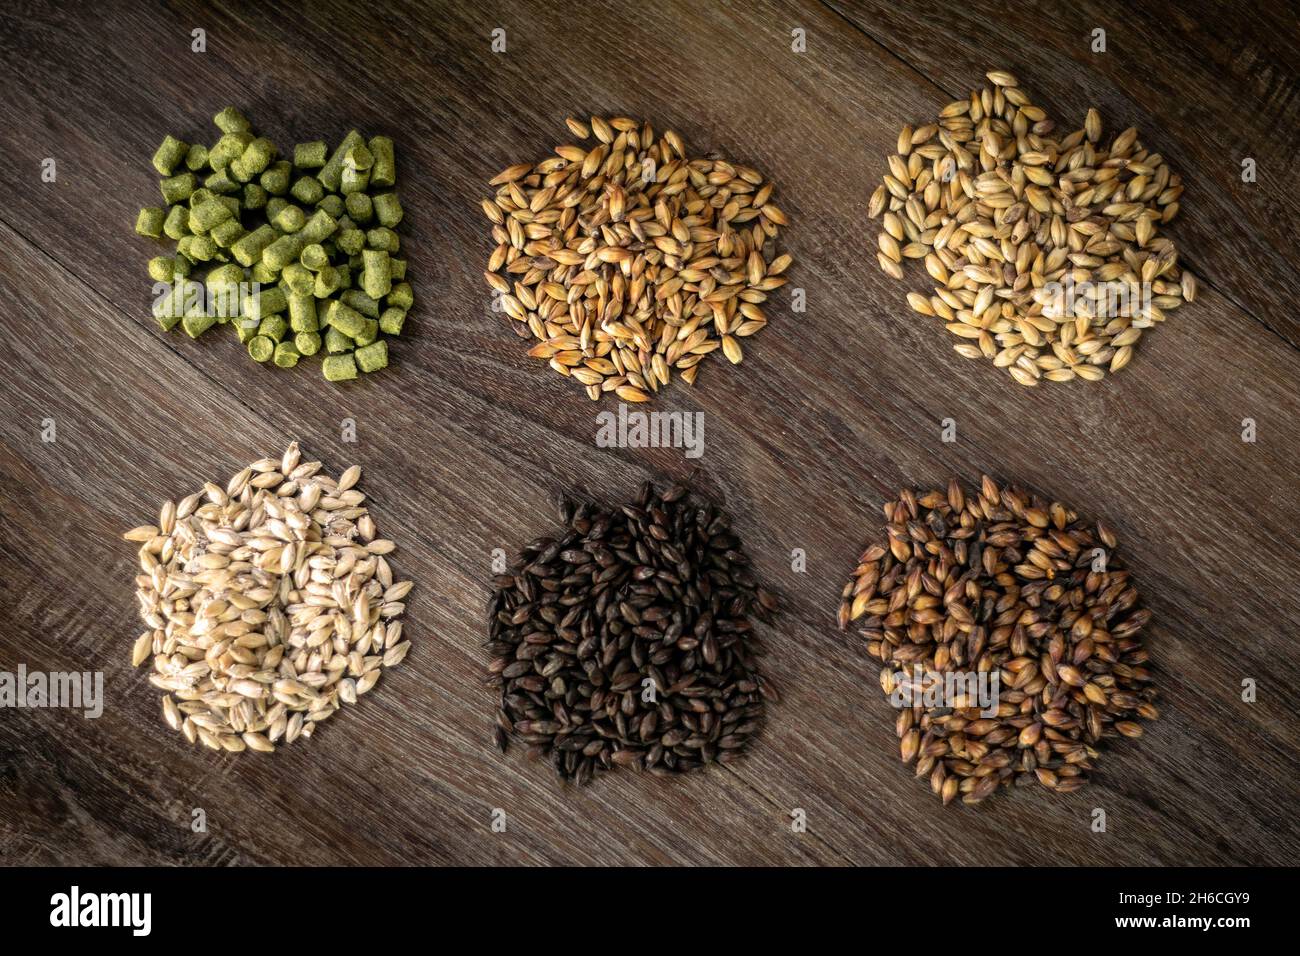 Barley malt grains beer brewing natural traditional ingredients in german brewery Stock Photo